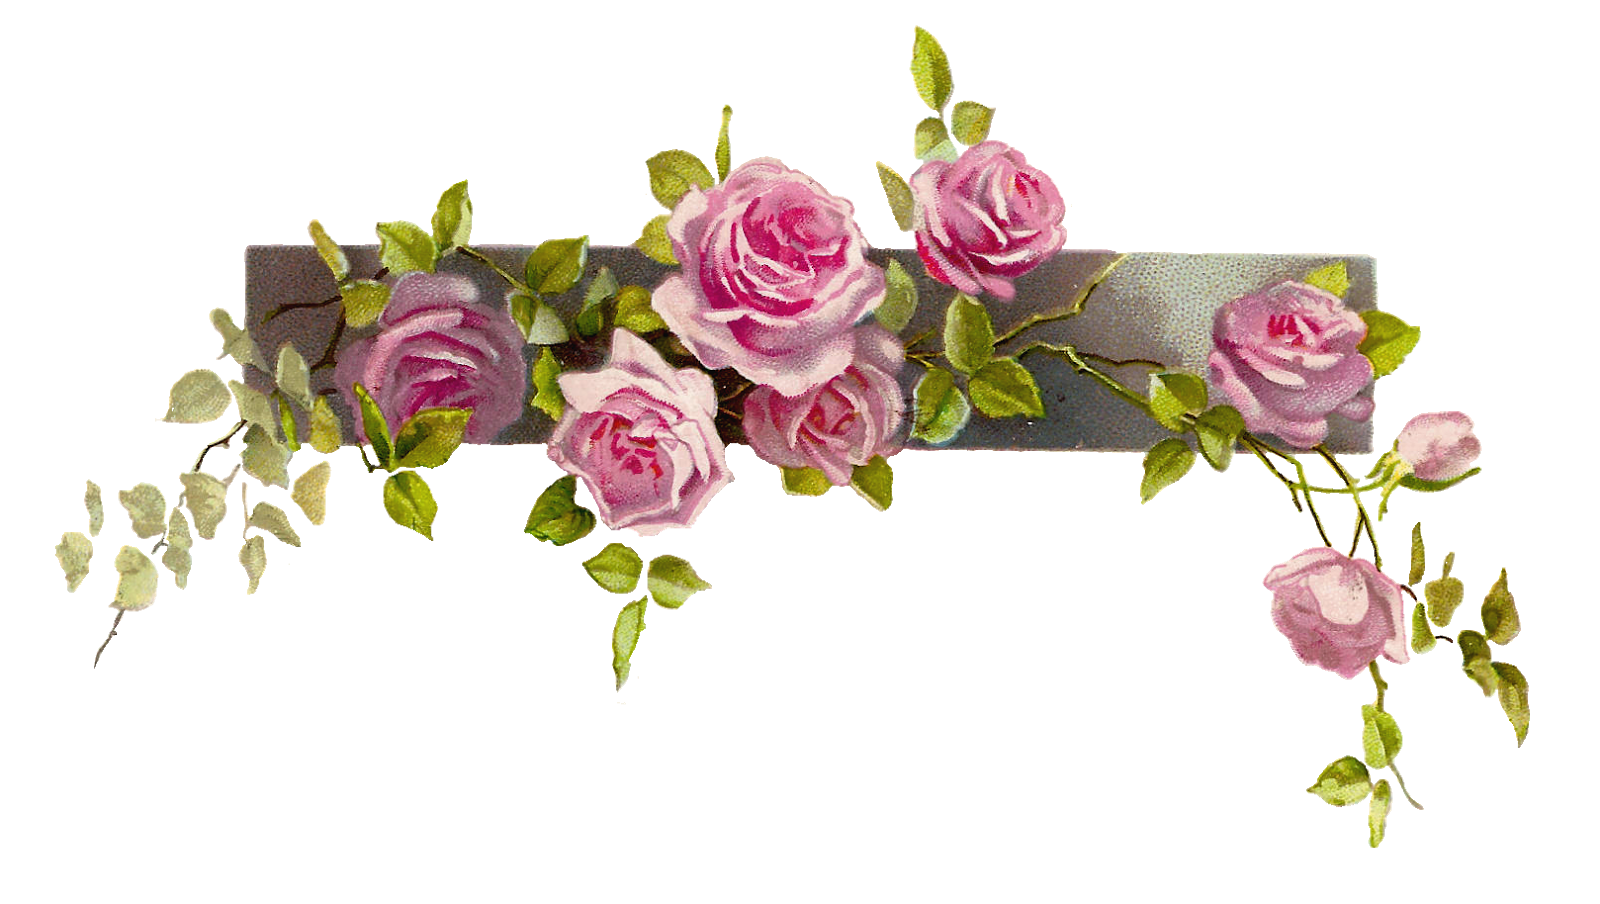 Border Flower Rose Line   Free Images At Clker Com   Vector Clip Art